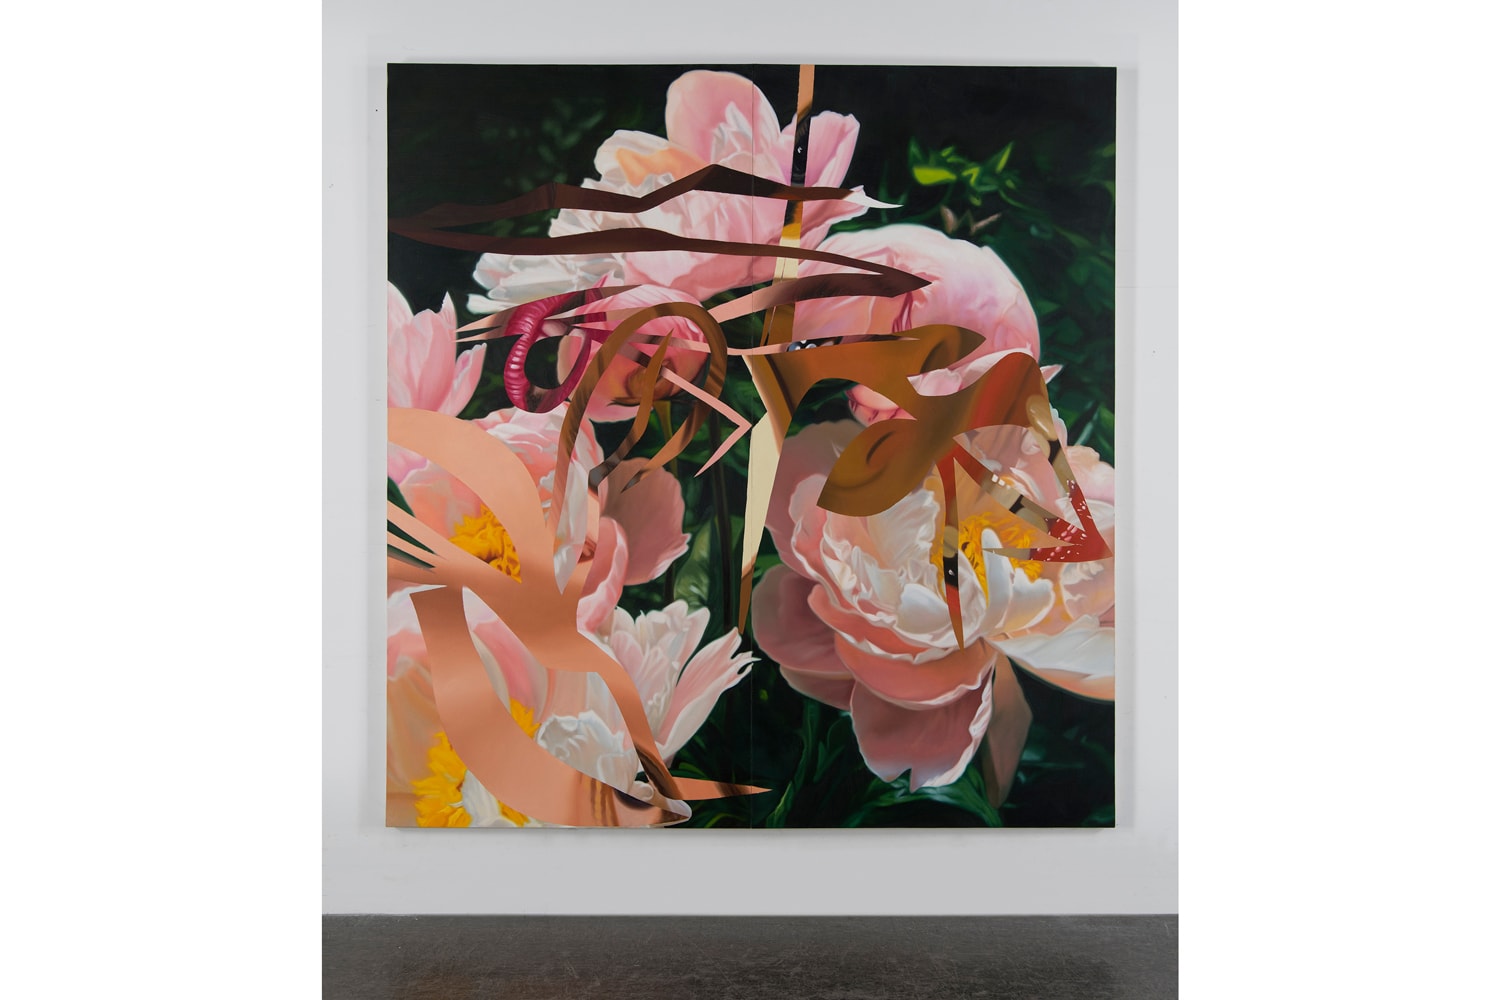 james rosenquist flowers exhibition artwork paintings ross kramer gallery